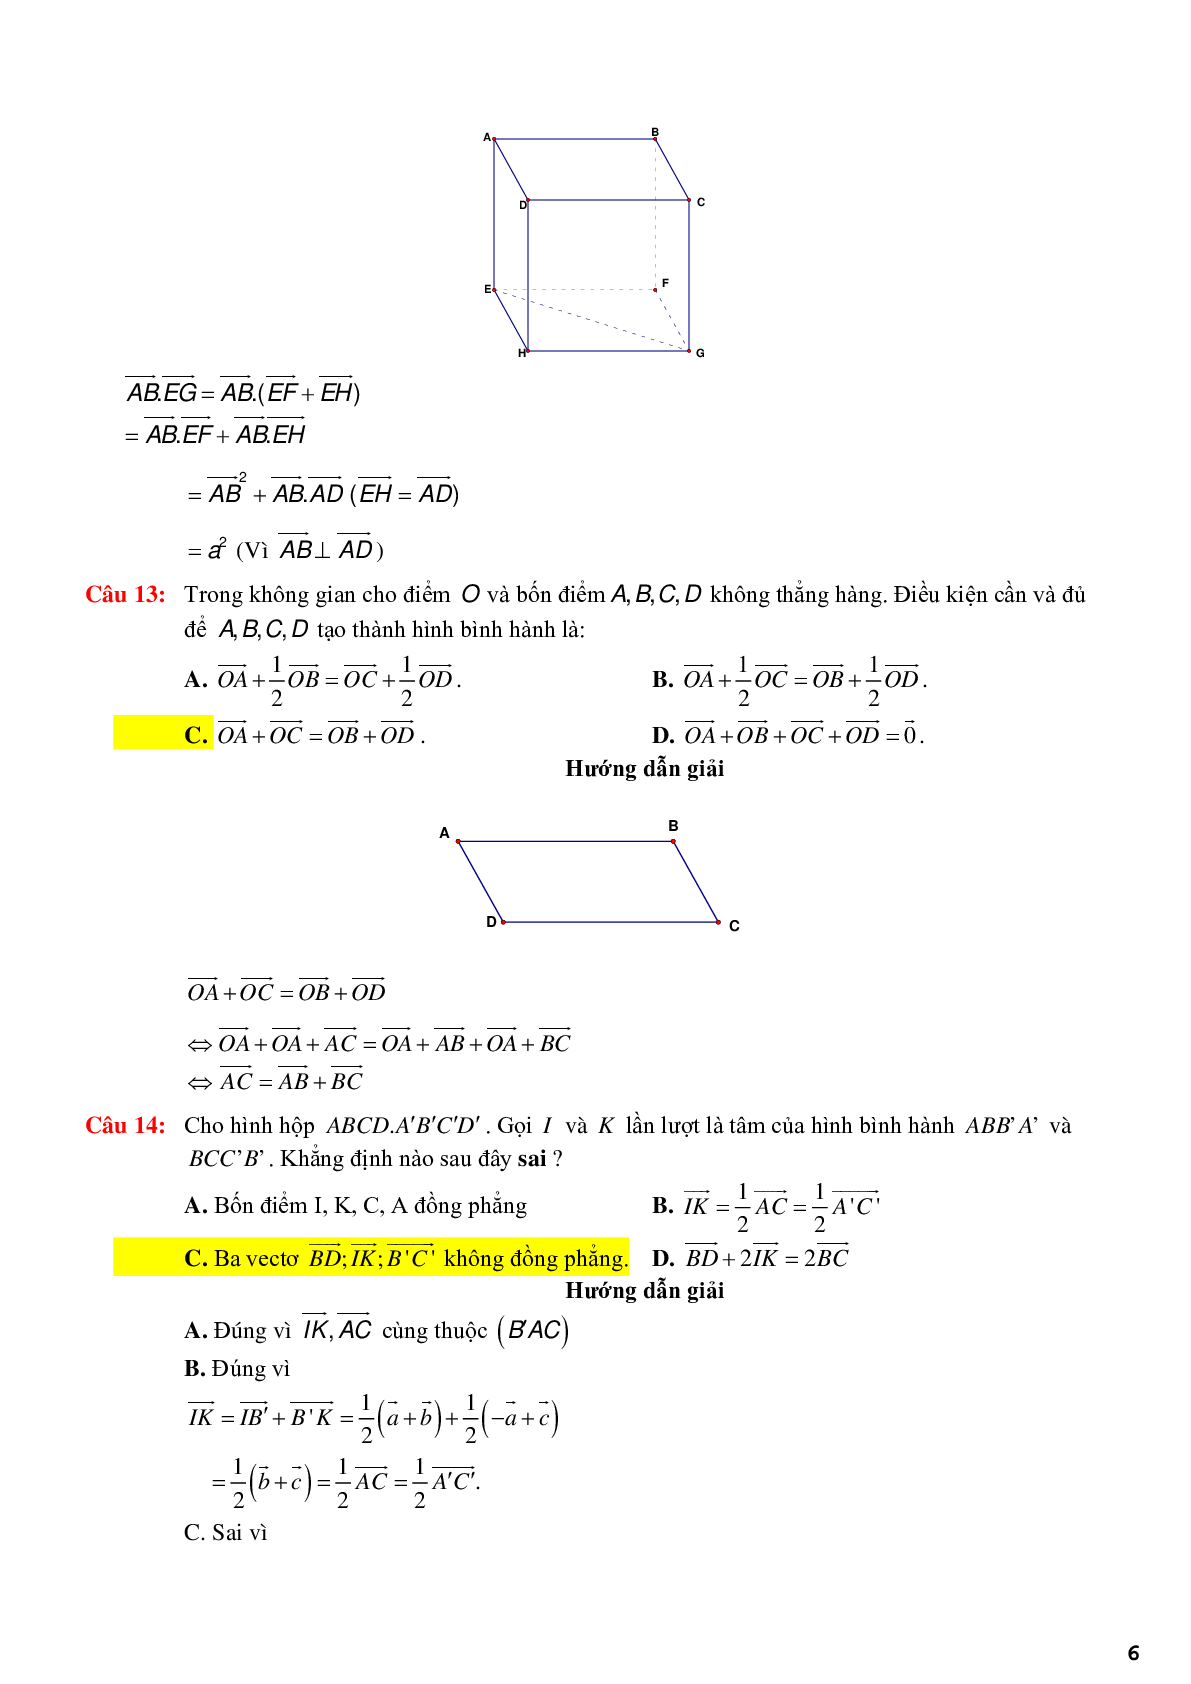 123 bài tập trắc nghiệm quan hệ vuông góc có lời giải chi tiết (trang 6)